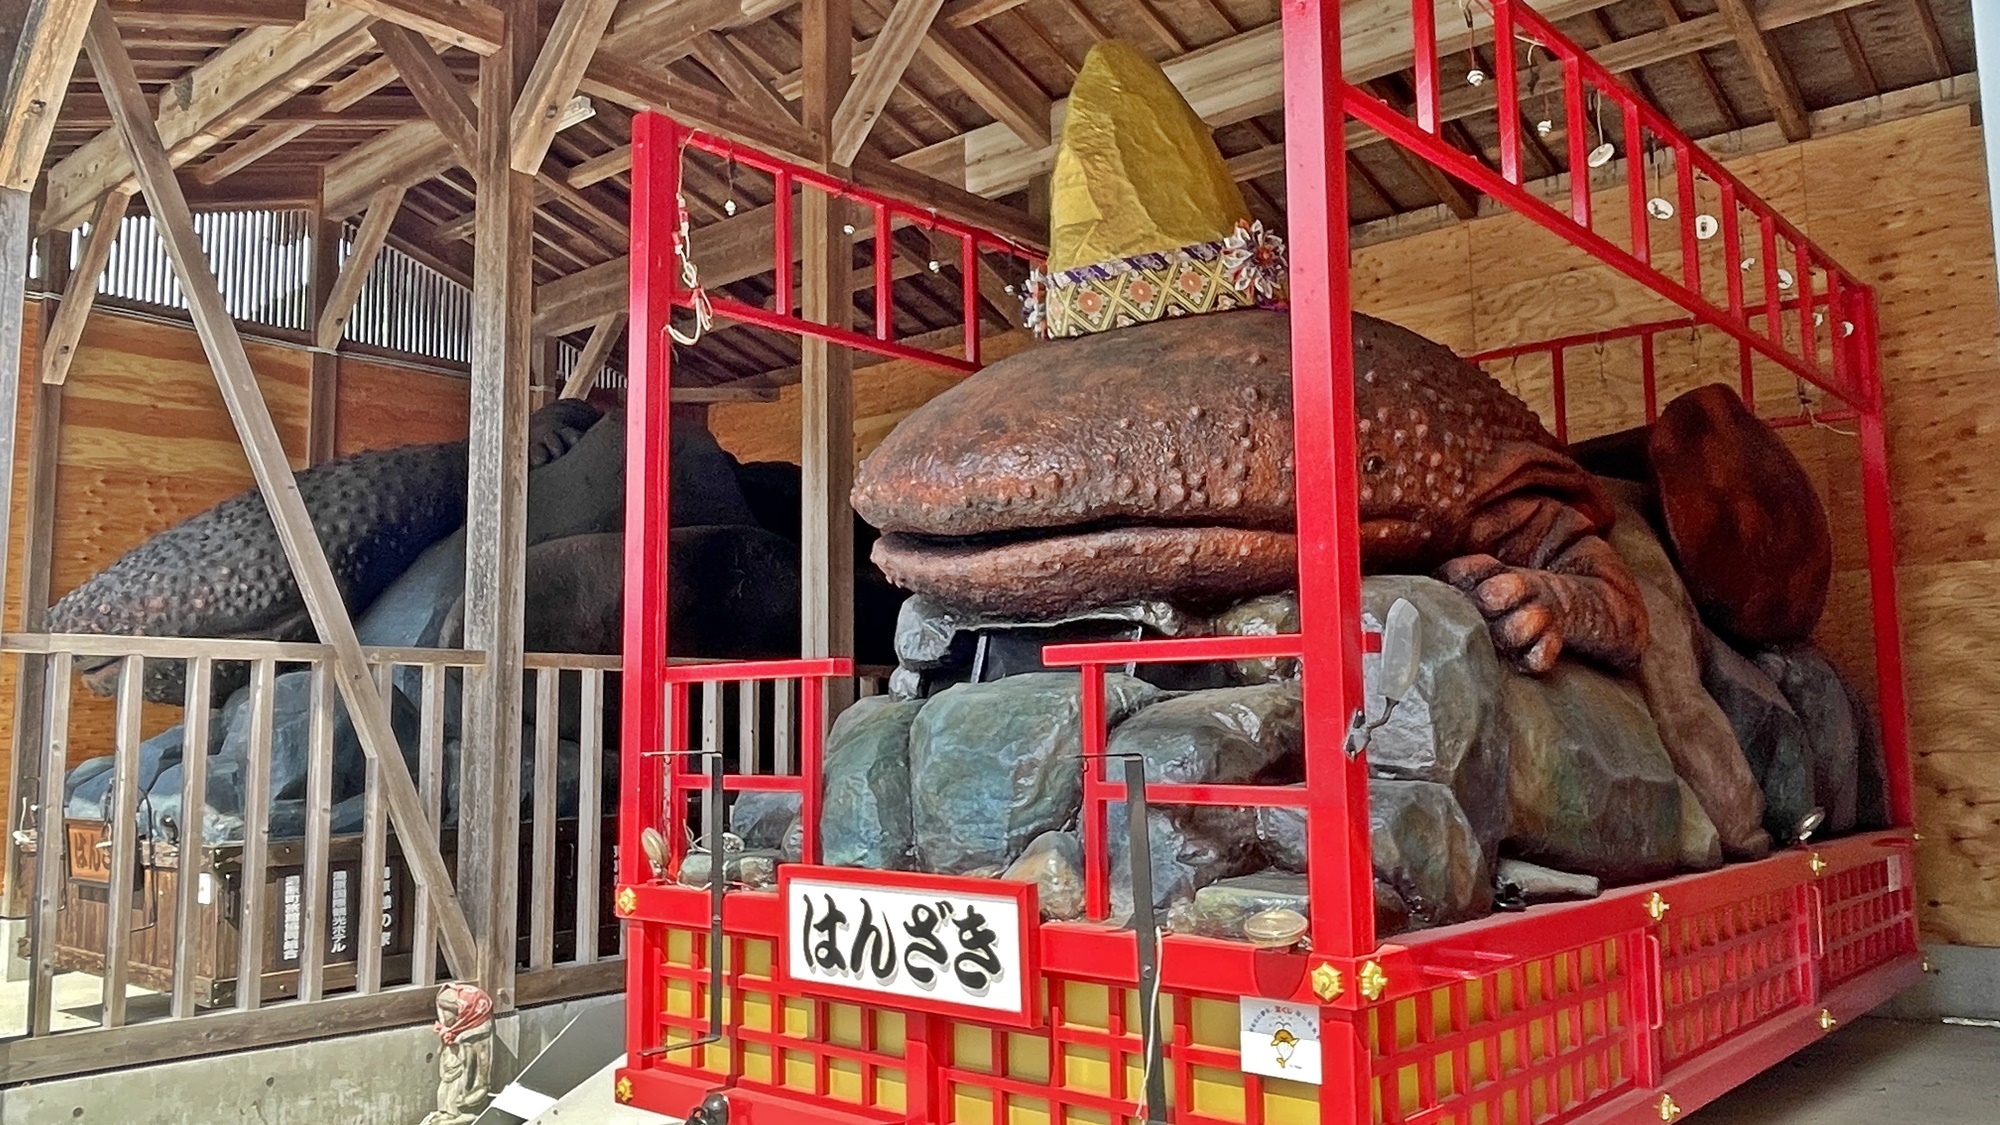 *〔周辺観光〕岡山の奇祭「はんざき祭り」の山車をご覧いただけます。